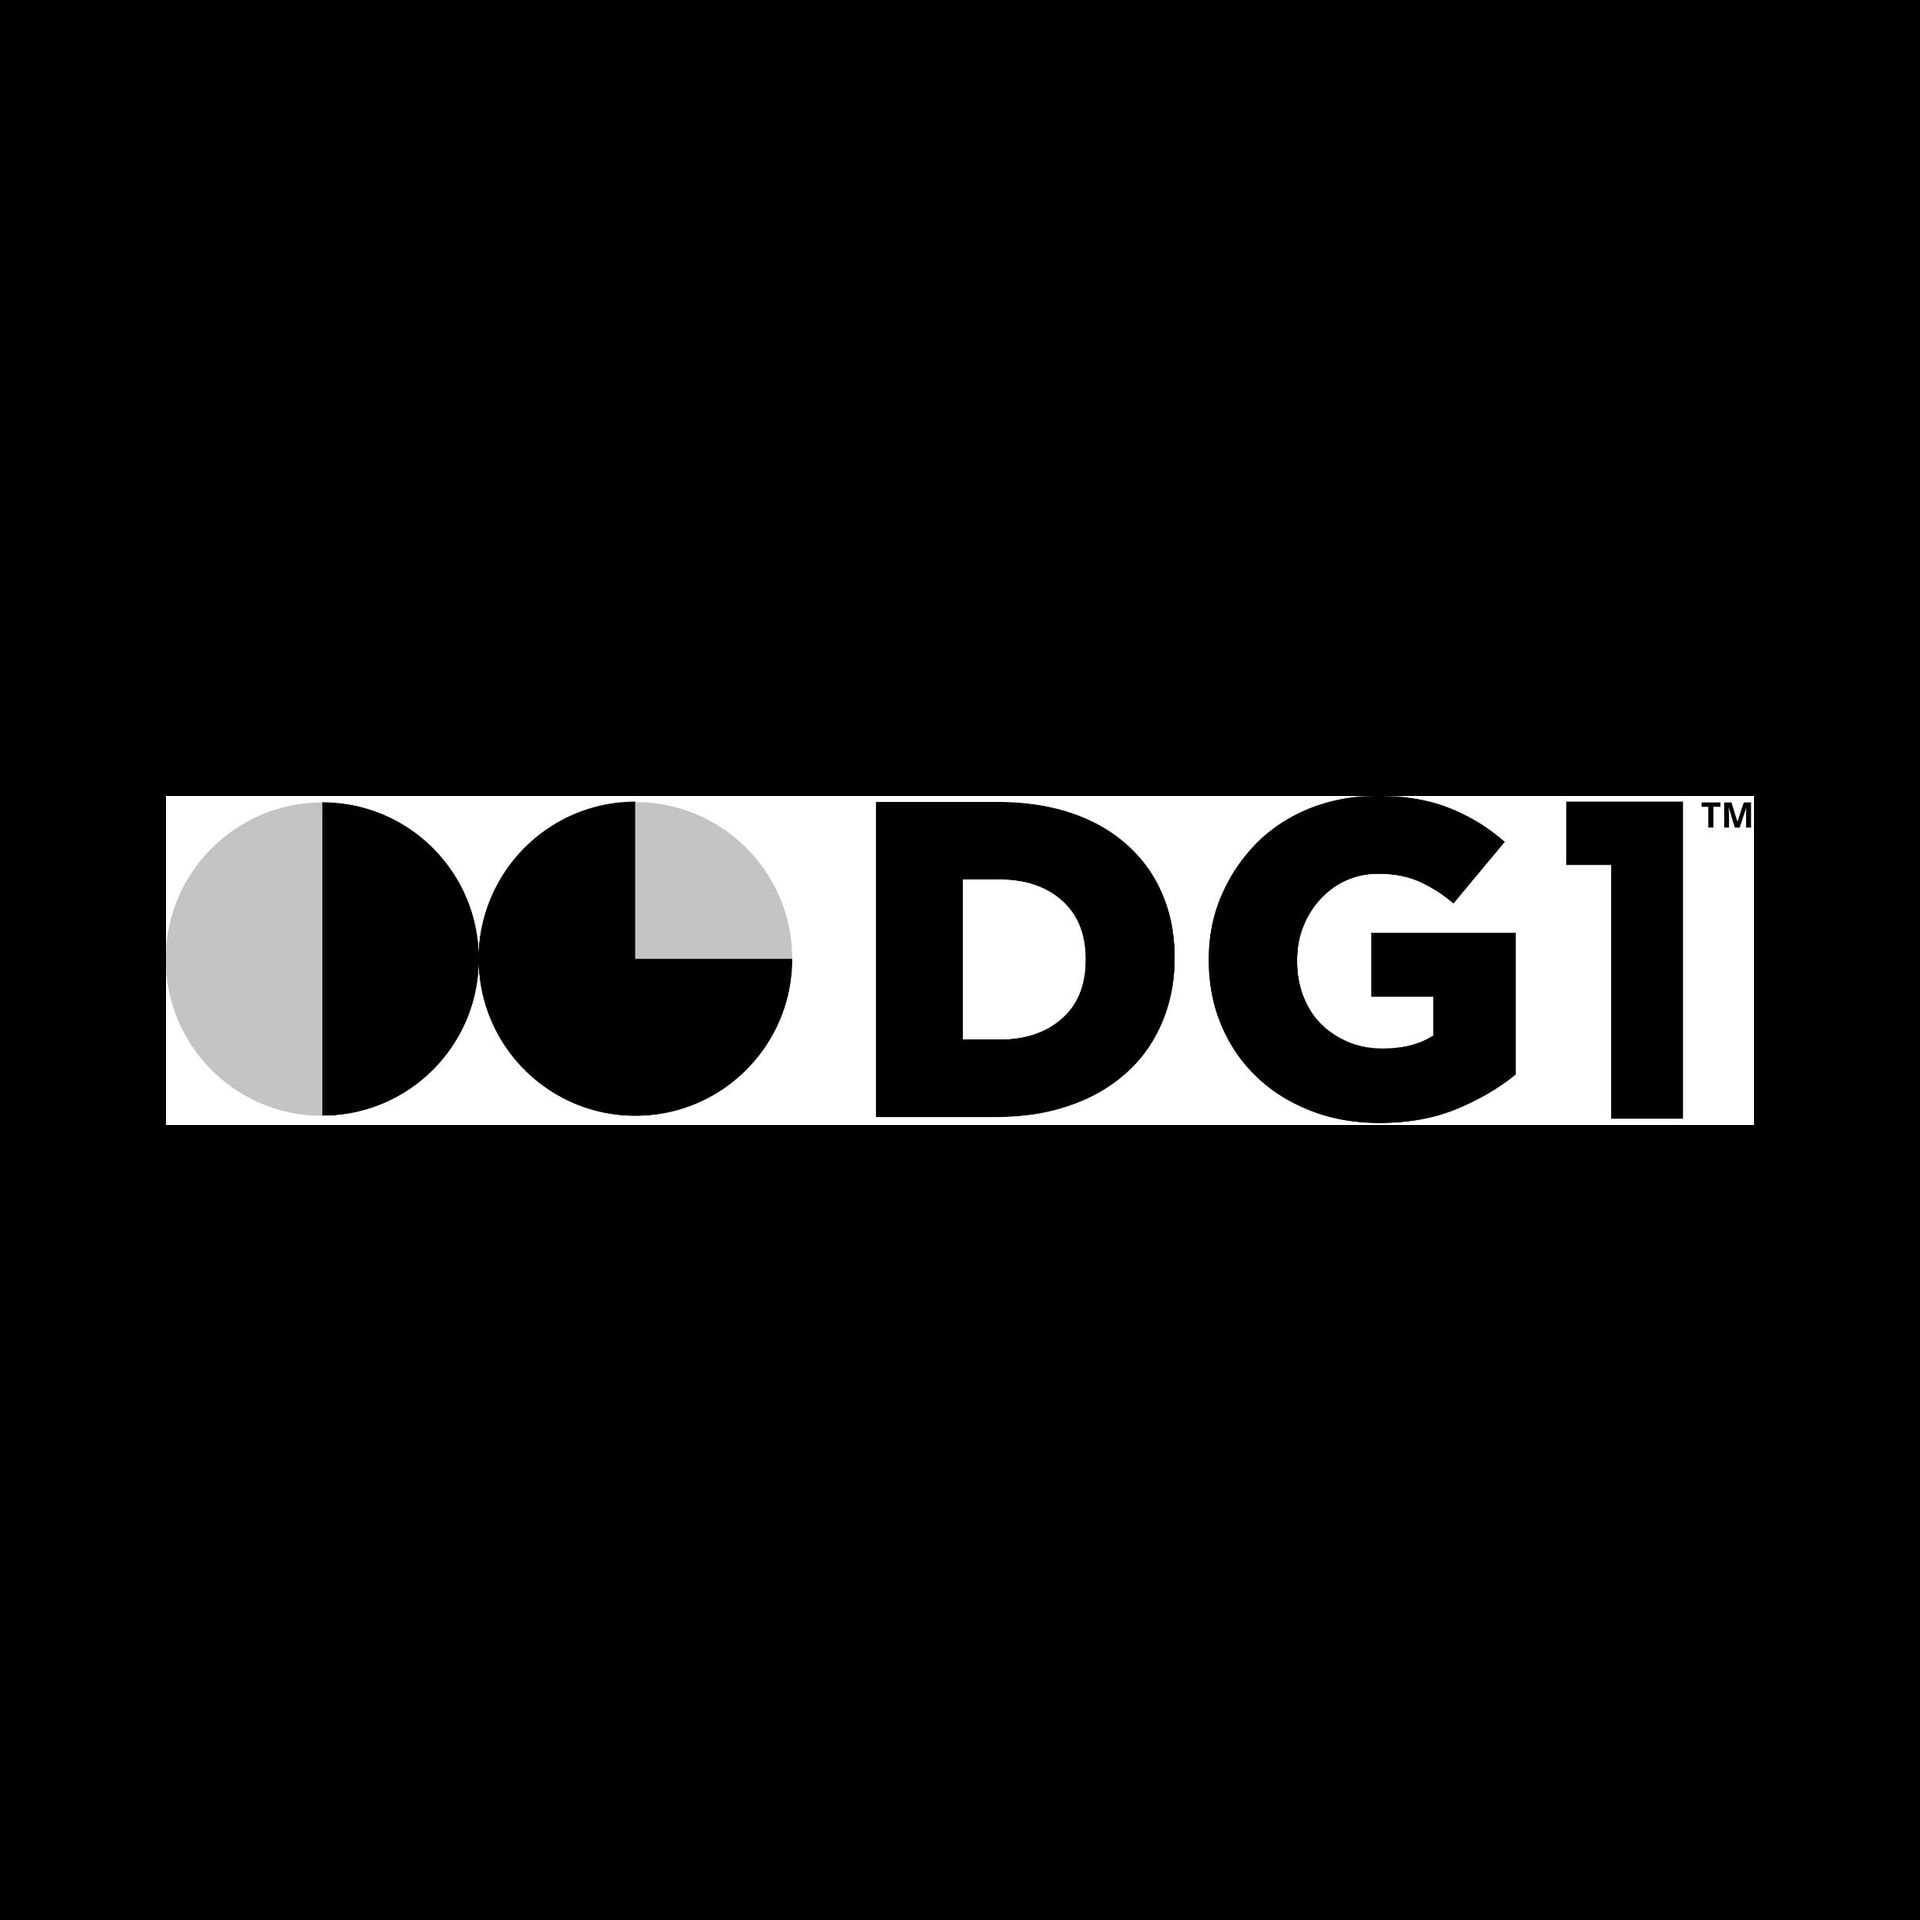 Official sponsor, Dg1